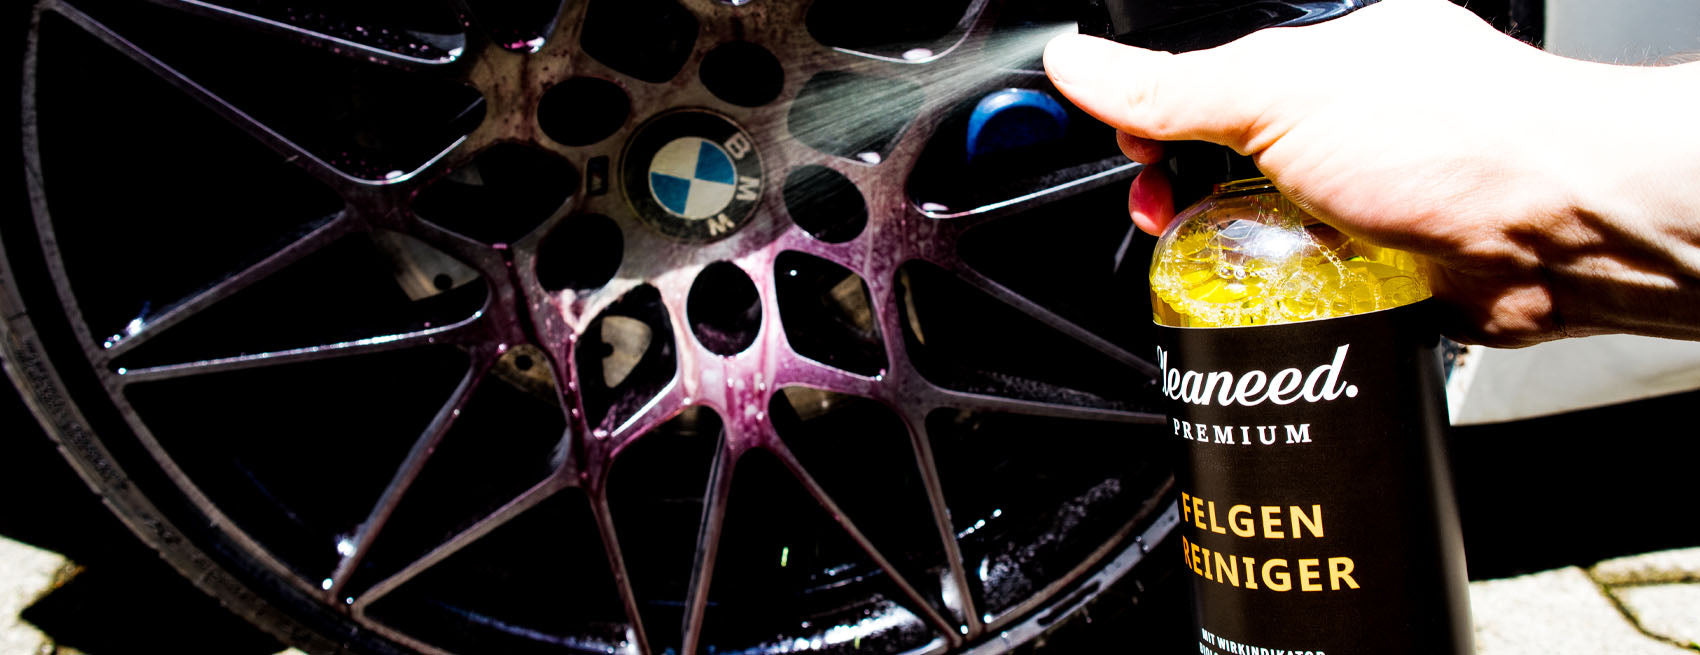 Cleaneed Premium Auto Reifen- und Felgen Waschset [3 Teile] Felgenreiniger  (3-St. Alles für die Reinigung und Pflege deiner Alufelgen und Reifen  Felgenreiniger, Felgenbürste und Gummipflege)